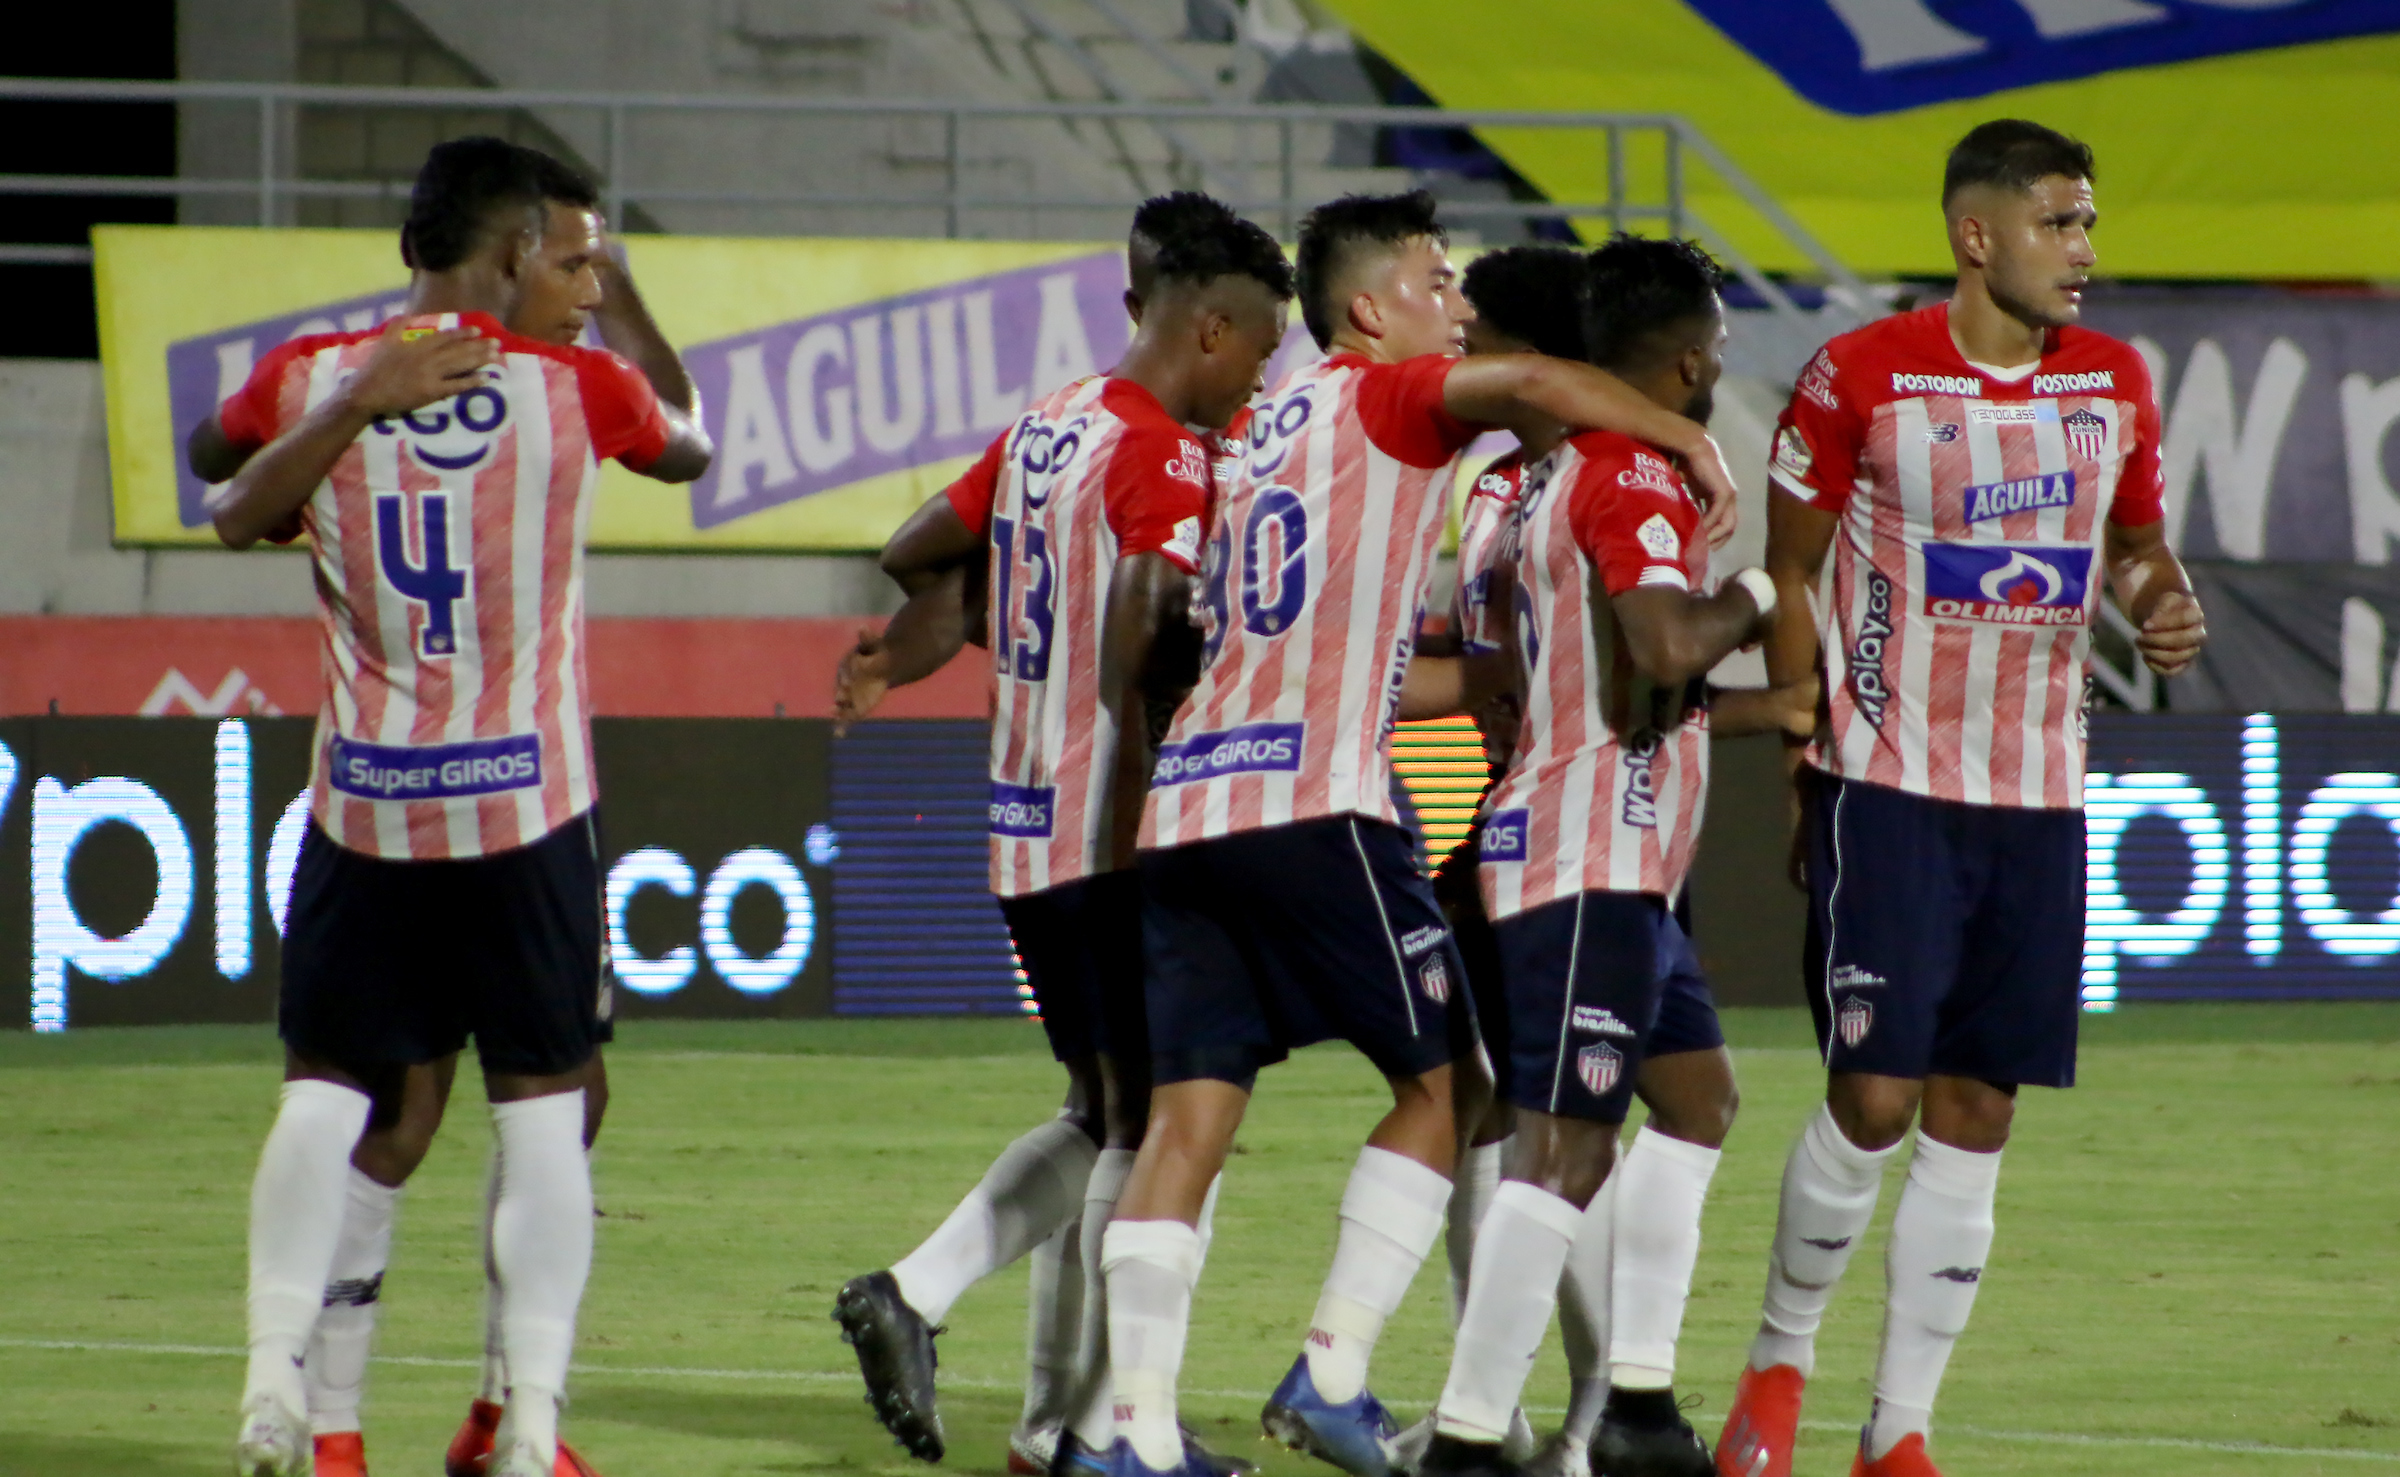 Victoria para Junior y América, Pasto nuevo líder : resumen de la jornada 9 de Liga - LARAZON.CO